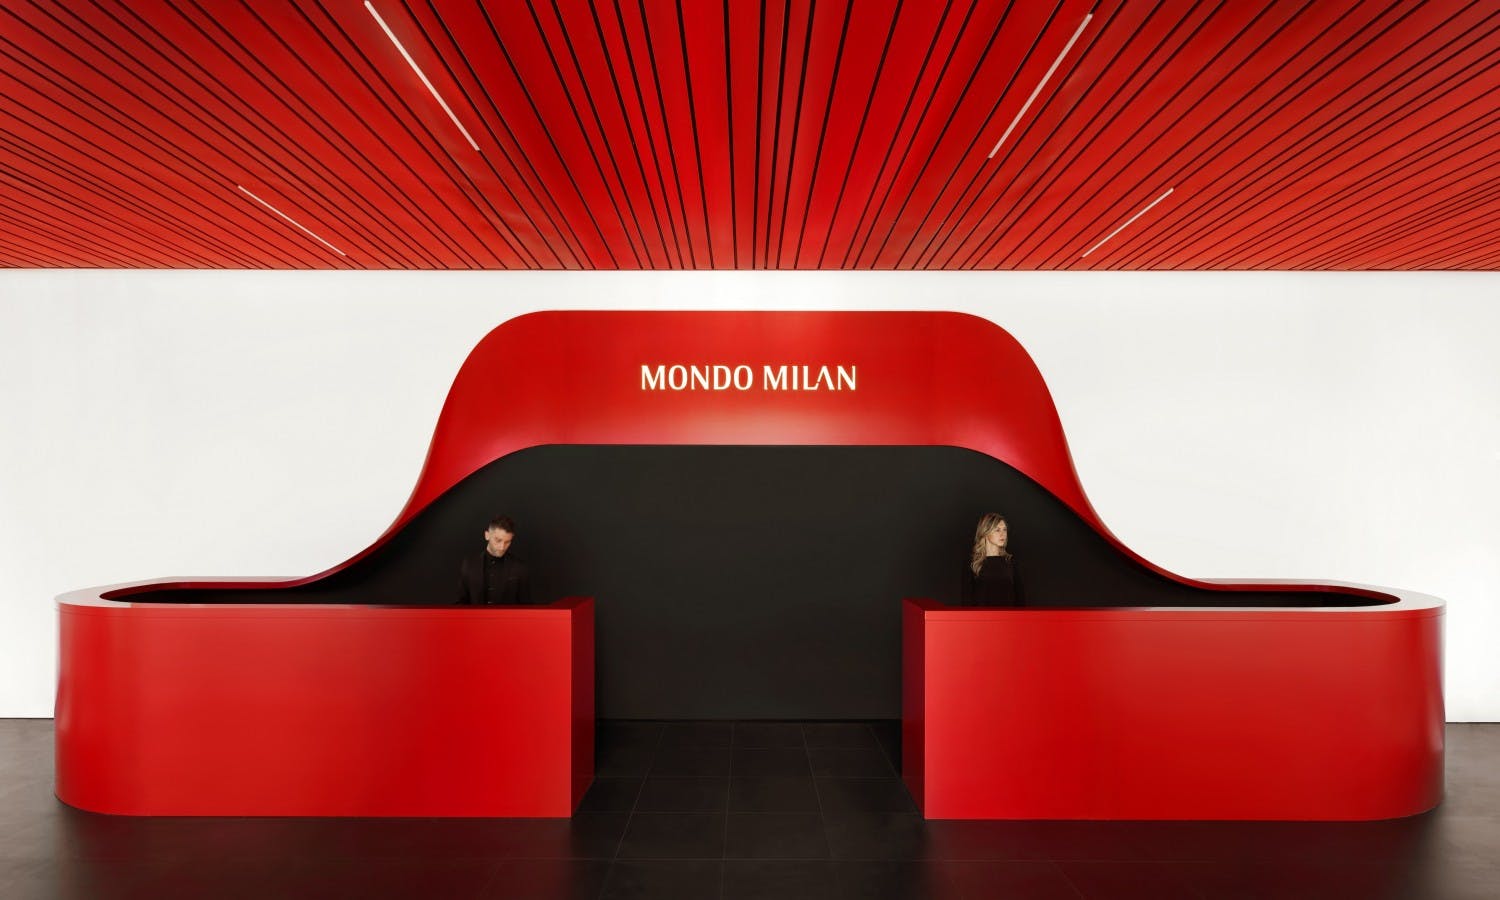 Casa Milan: Eintrittskarten für das Mondo Milan Museum